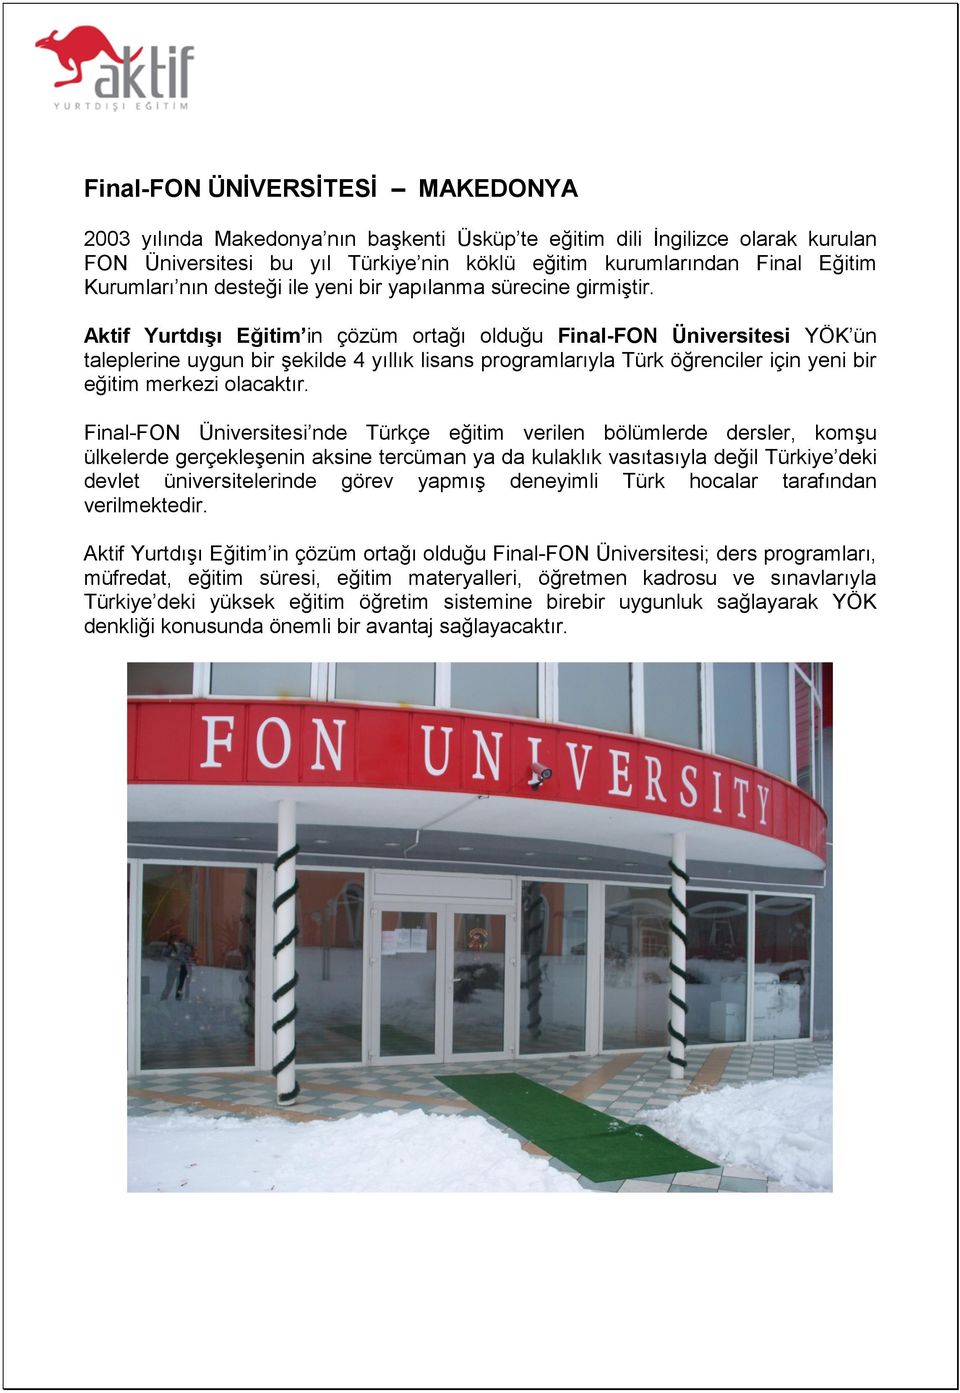 Aktif Yurtdışı Eğitim in çözüm ortağı olduğu Final-FON Üniversitesi YÖK ün taleplerine uygun bir şekilde 4 yıllık lisans programlarıyla Türk öğrenciler için yeni bir eğitim merkezi olacaktır.